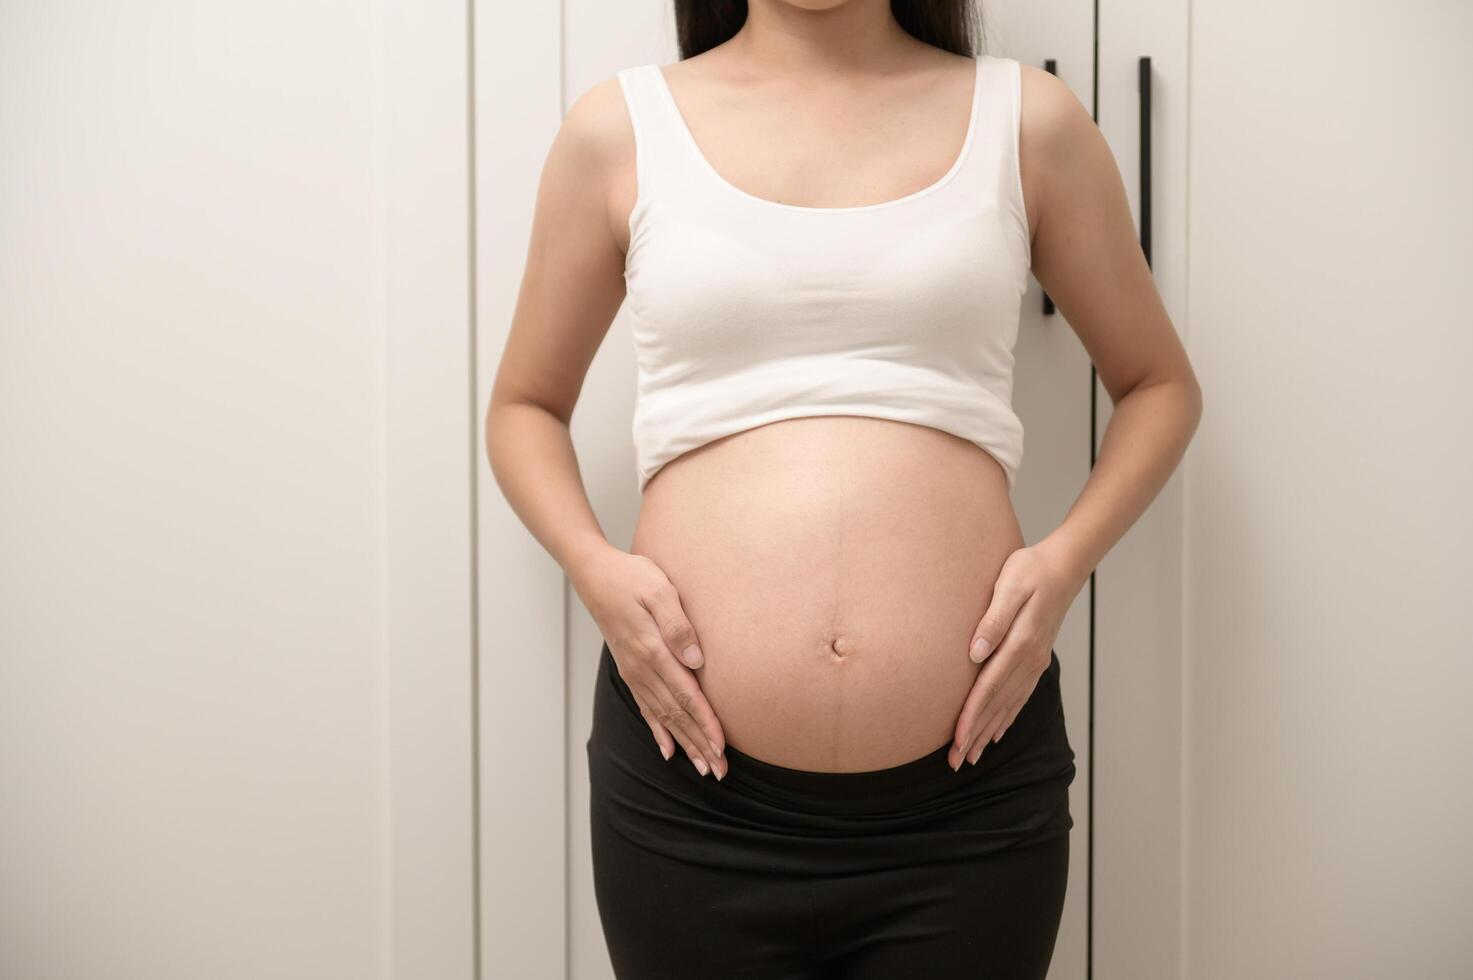 portrait de magnifique Enceinte femme, la fertilité infertilité traitement, FIV, futur maternité concept photo